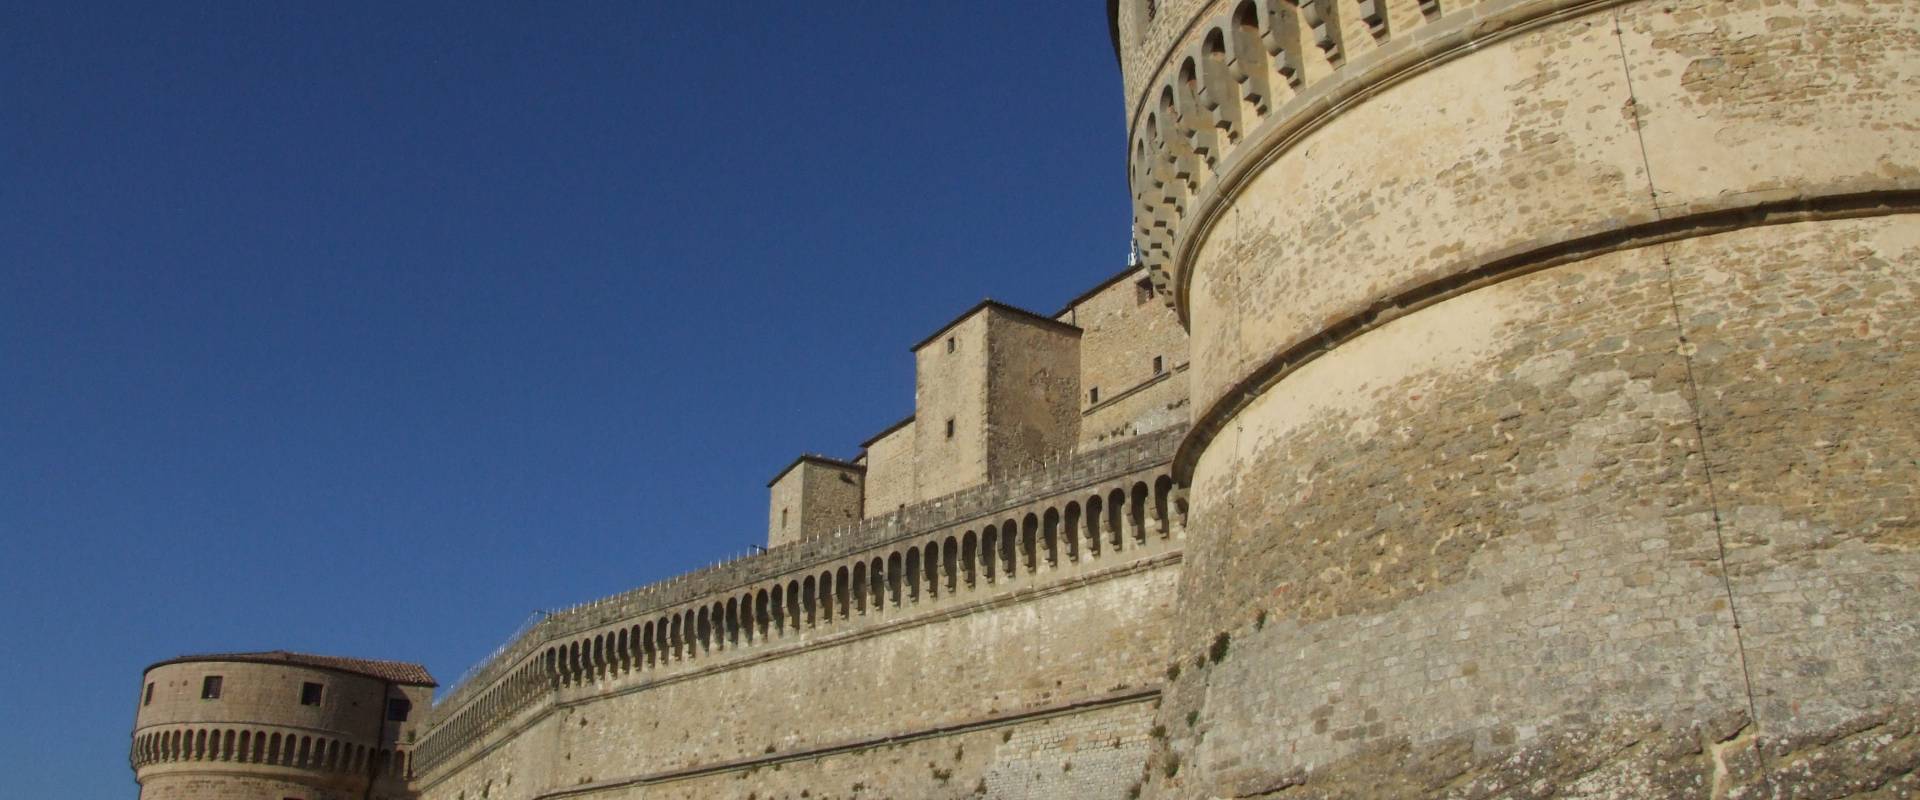 Fortezza di San Leo - 16 foto di Diego Baglieri